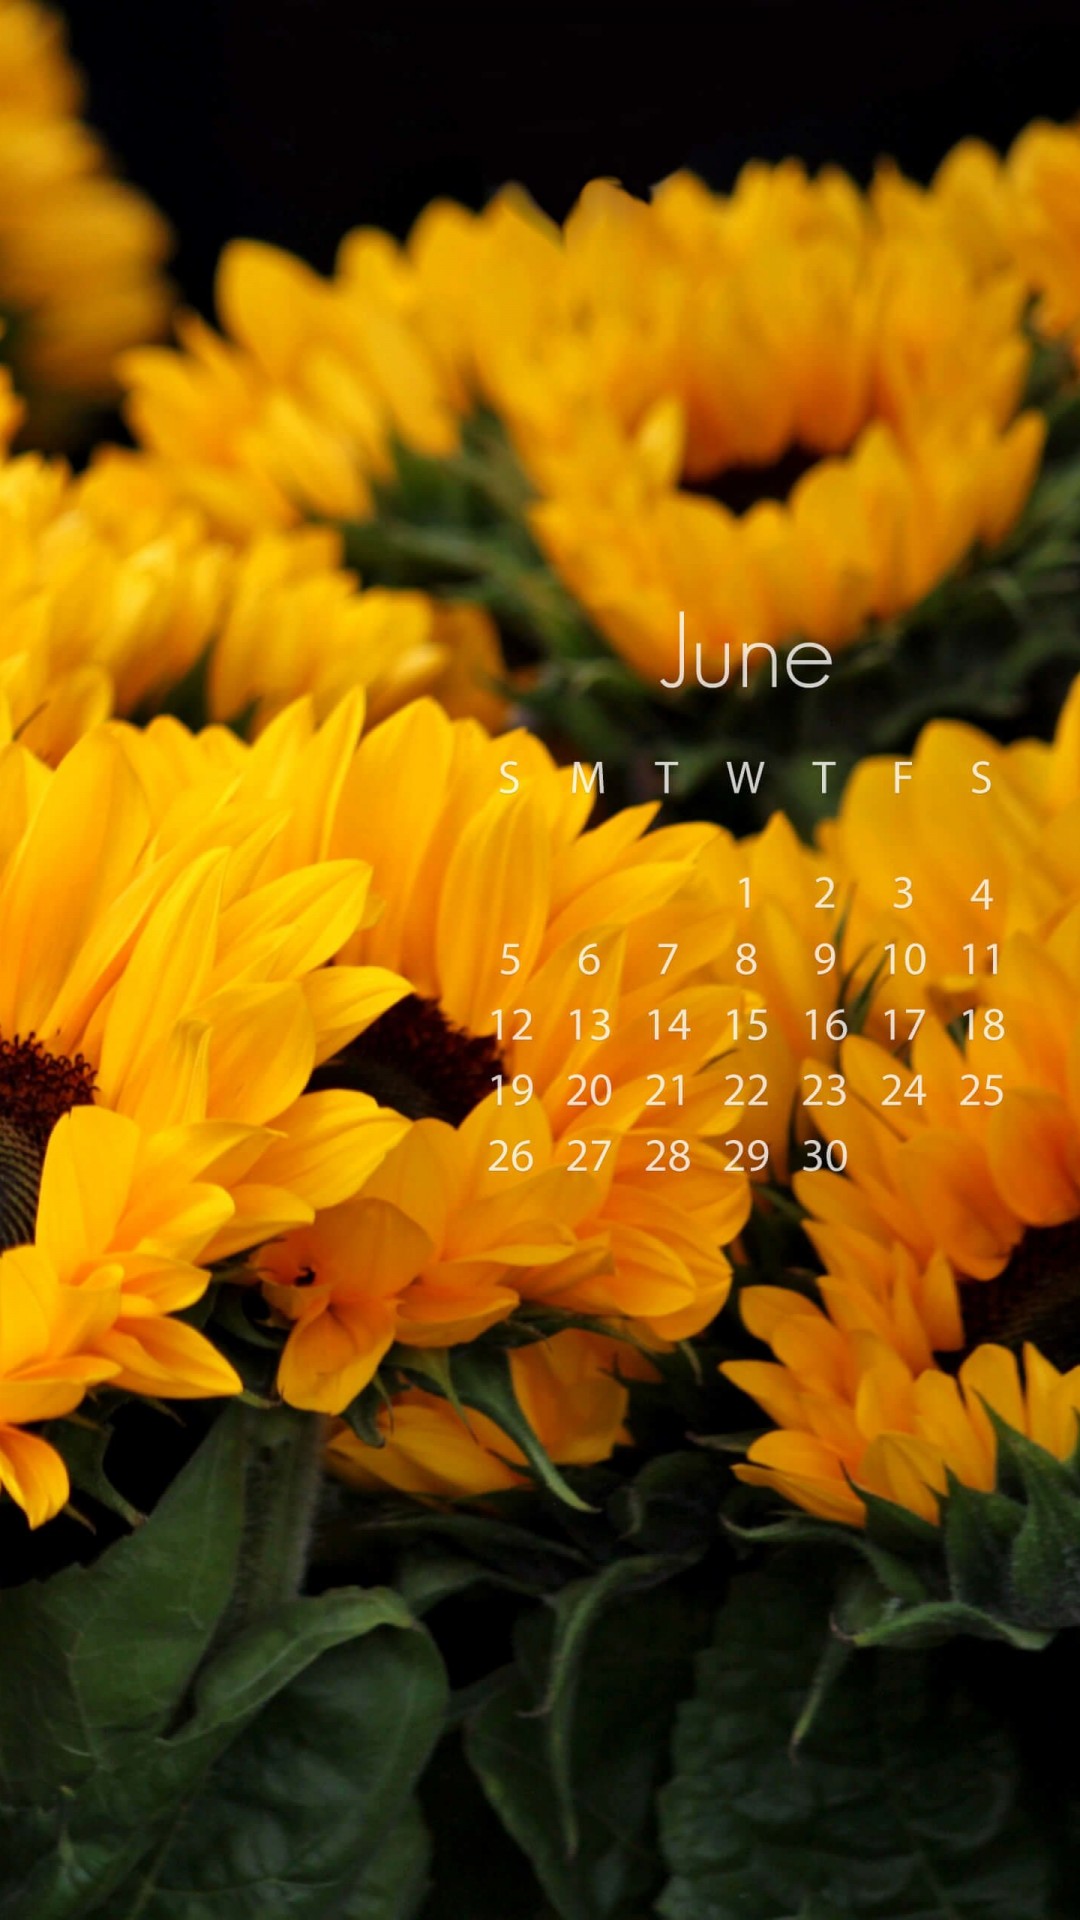 June 2016 Calendar Wallpaper for SAMSUNG Galaxy Note 3